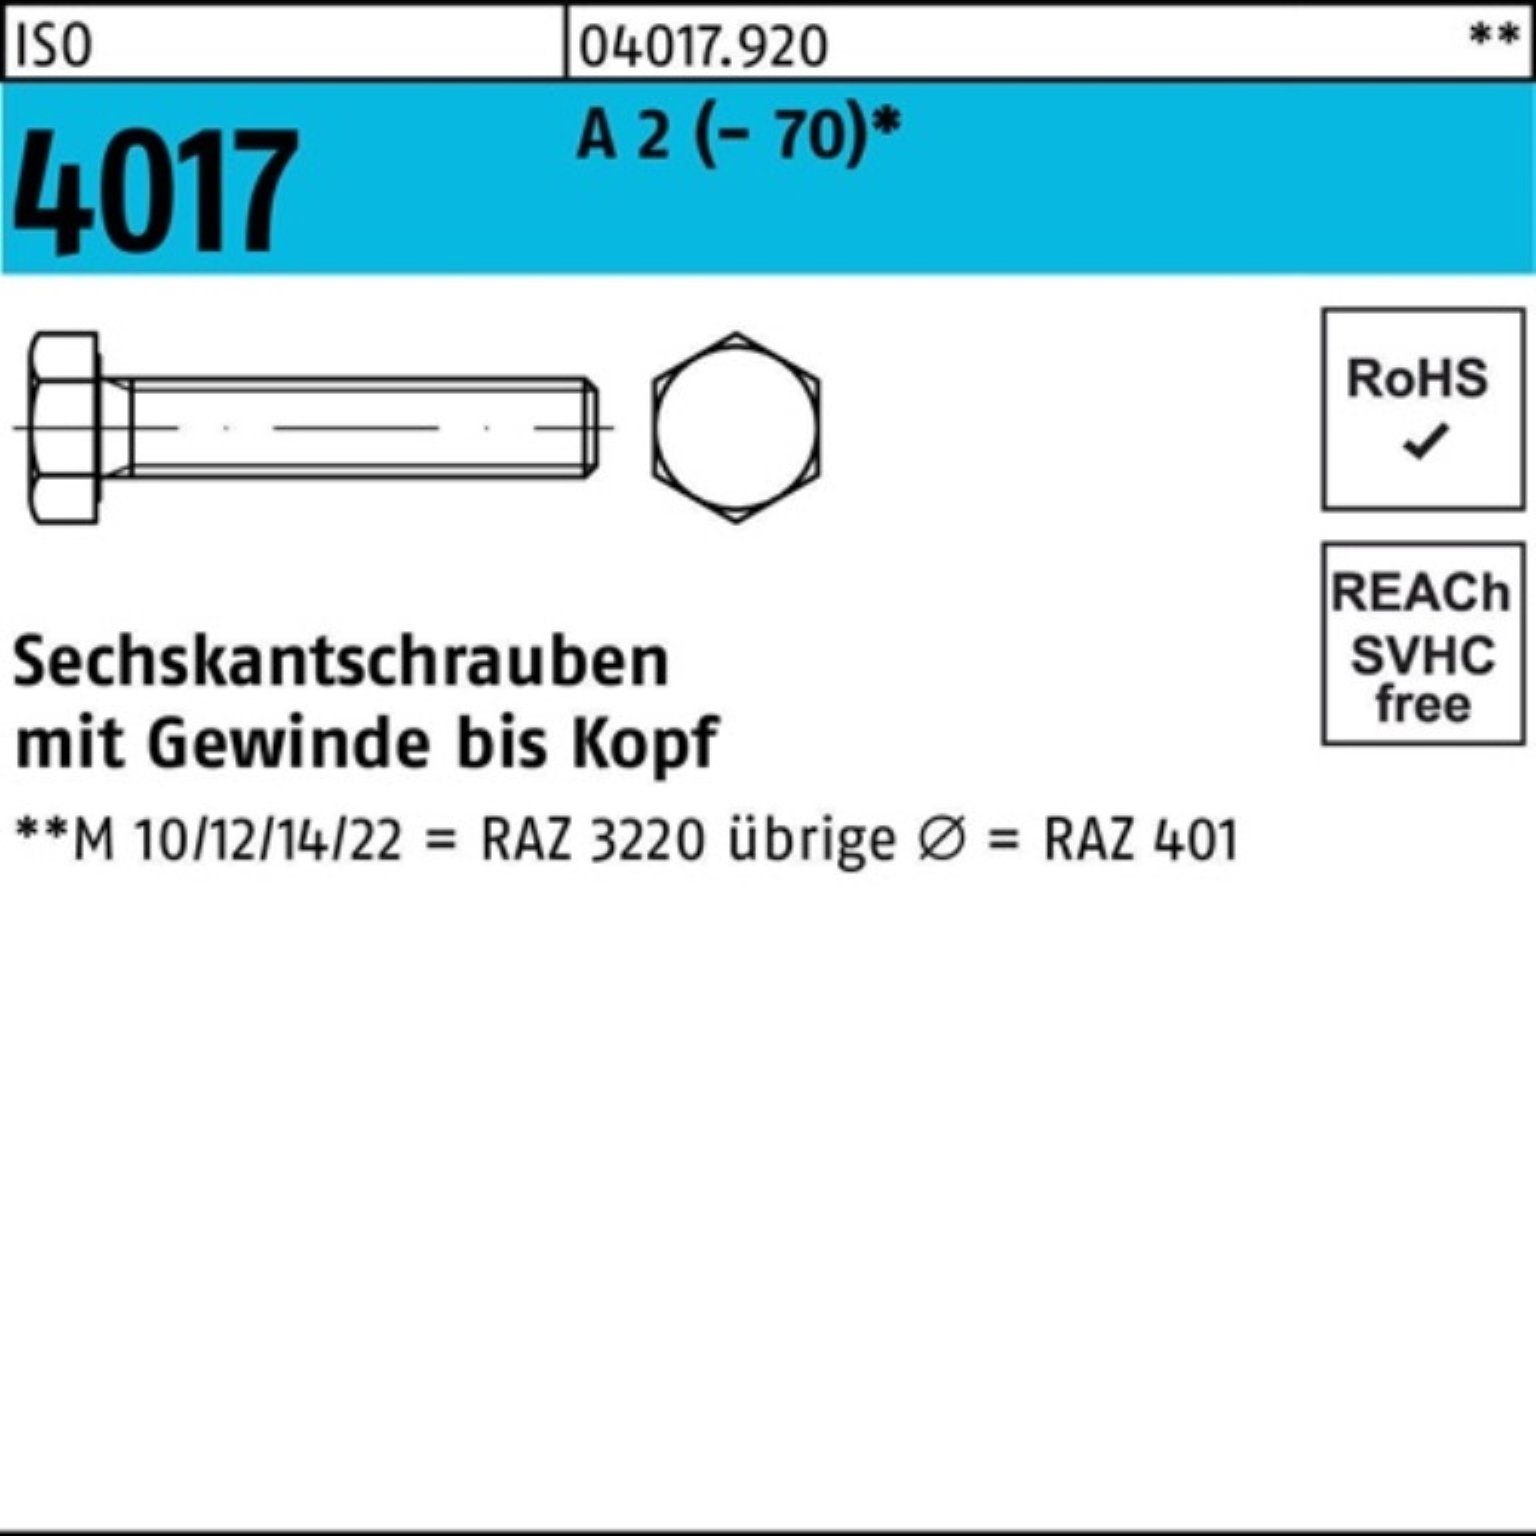 Bufab Sechskantschraube 100er Pack Sechskantschraube ISO 4017 VG M22x 90 A 2 (70) 1 Stück I